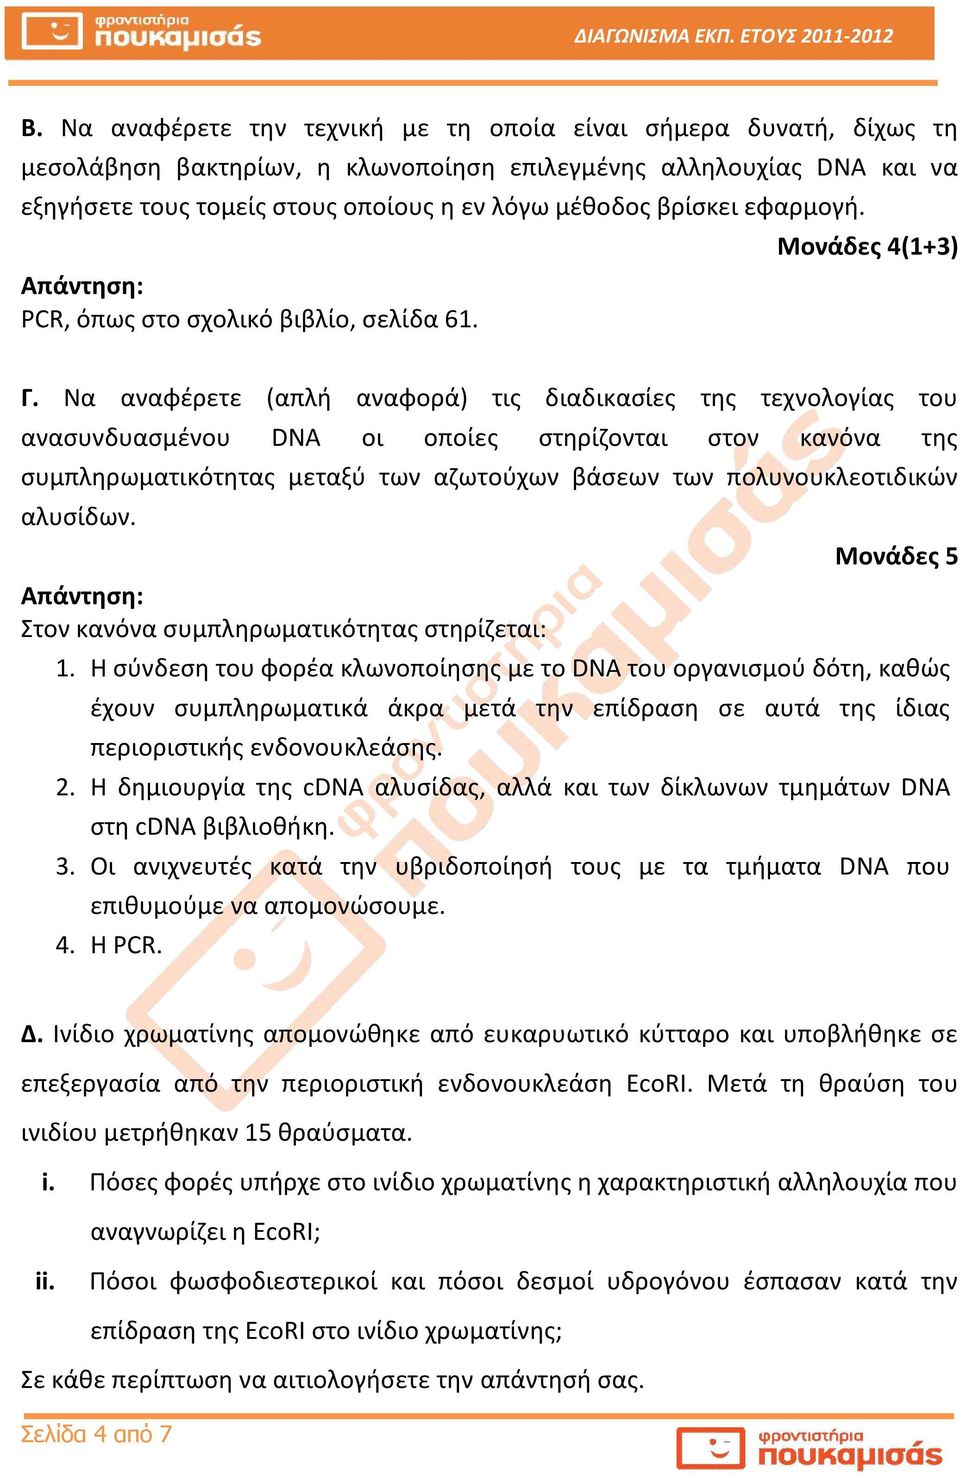 Να αναφέρετε (απλή αναφορά) τις διαδικασίες της τεχνολογίας του ανασυνδυασμένου DNA οι οποίες στηρίζονται στον κανόνα της συμπληρωματικότητας μεταξύ των αζωτούχων βάσεων των πολυνουκλεοτιδικών